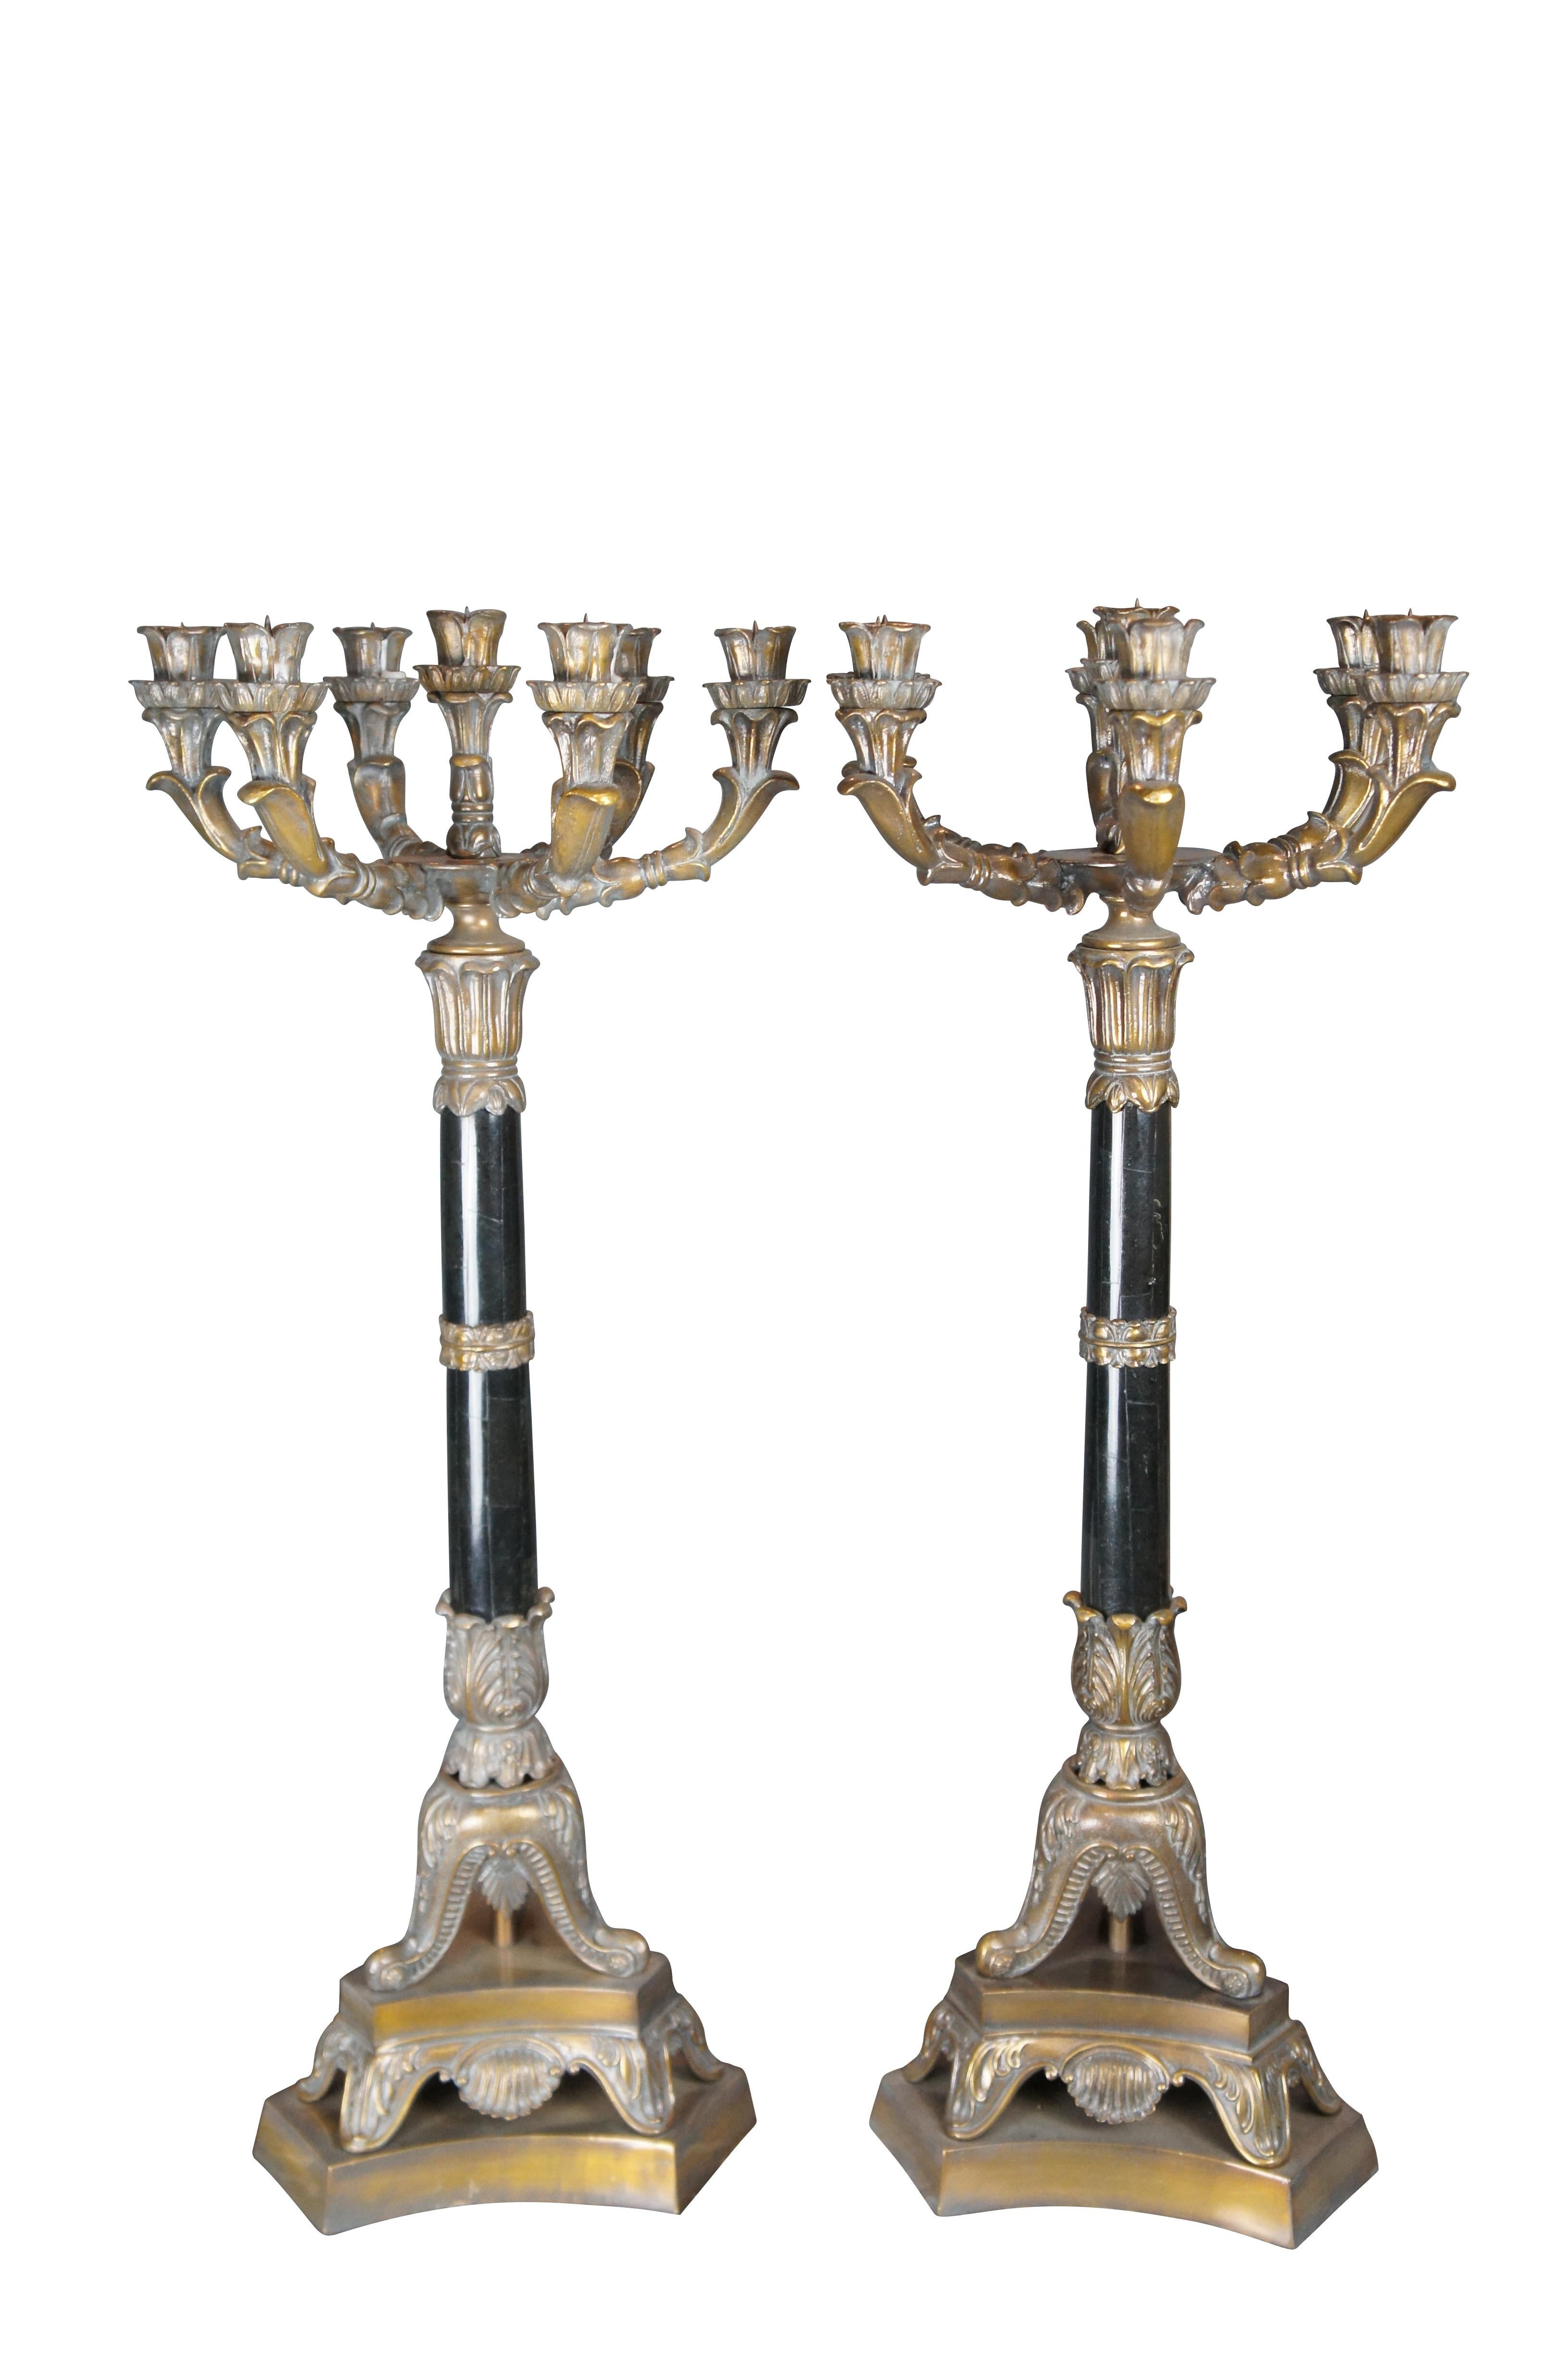 Ein großes Paar Maitland-Smith-Kerzenhalter, etwa letztes Viertel des 20. Jahrhunderts. Französisches Design mit außergewöhnlicher Handwerkskunst. Jeder Kerzenhalter ist aus Bronze gefertigt und hat einen siebenflammigen Kandelaber über einer